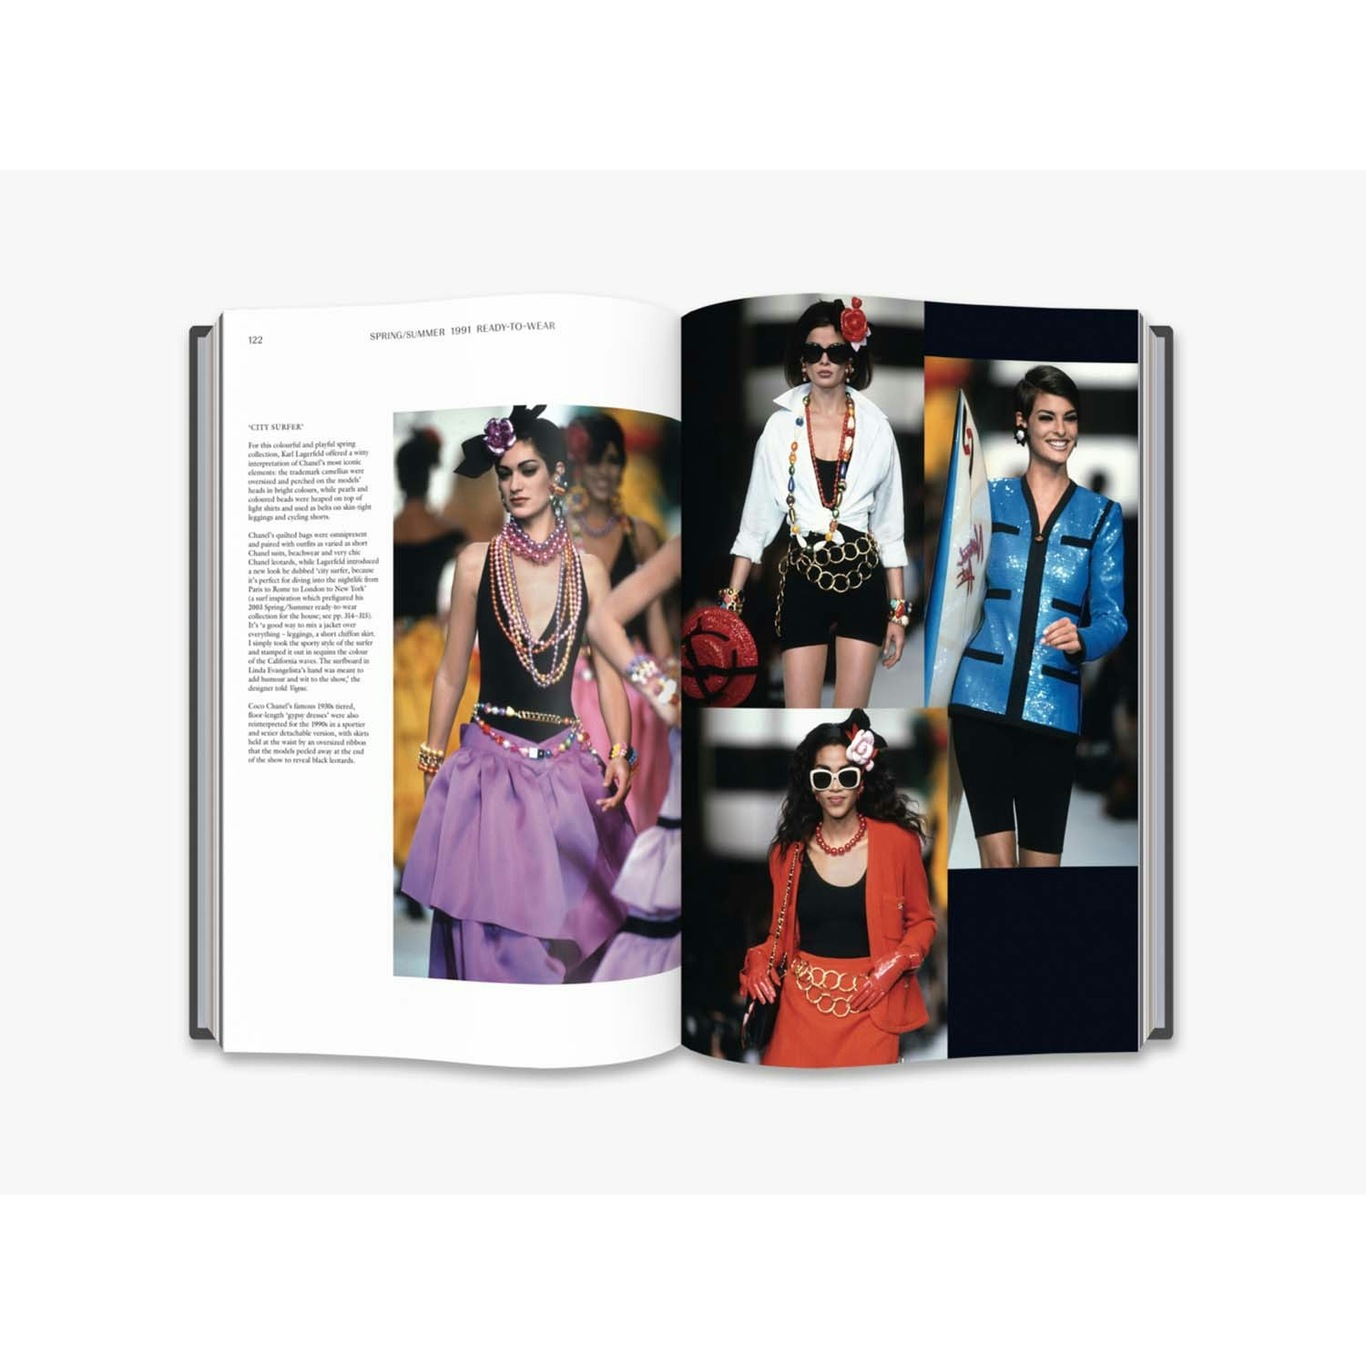 verden Gamle tider fjendtlighed Chanel Catwalk - New Mags @ RoyalDesign